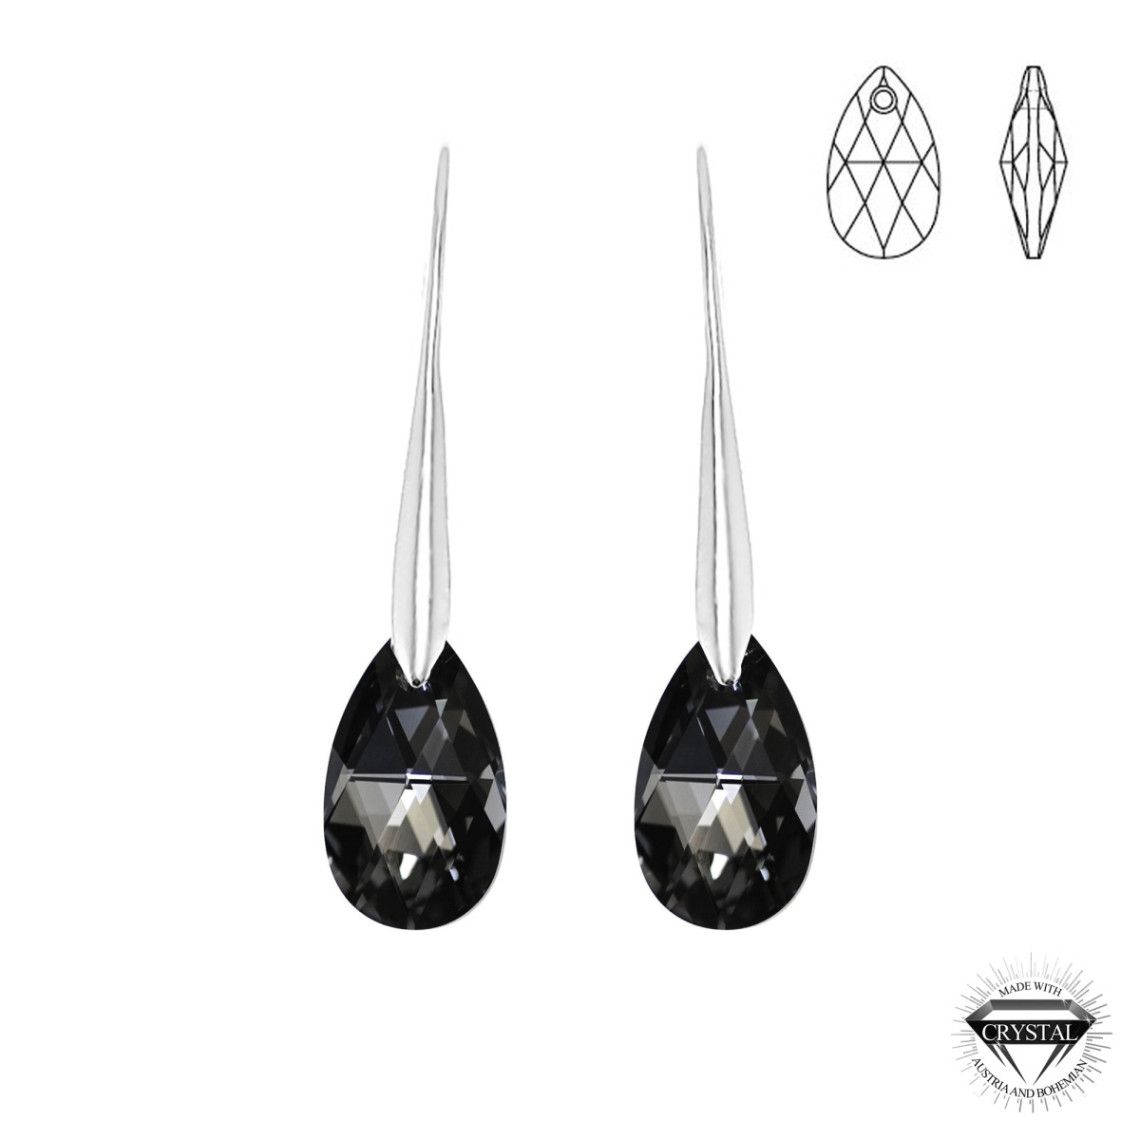 boucles d'oreilles argentée socharm ornées de cristaux swarovski